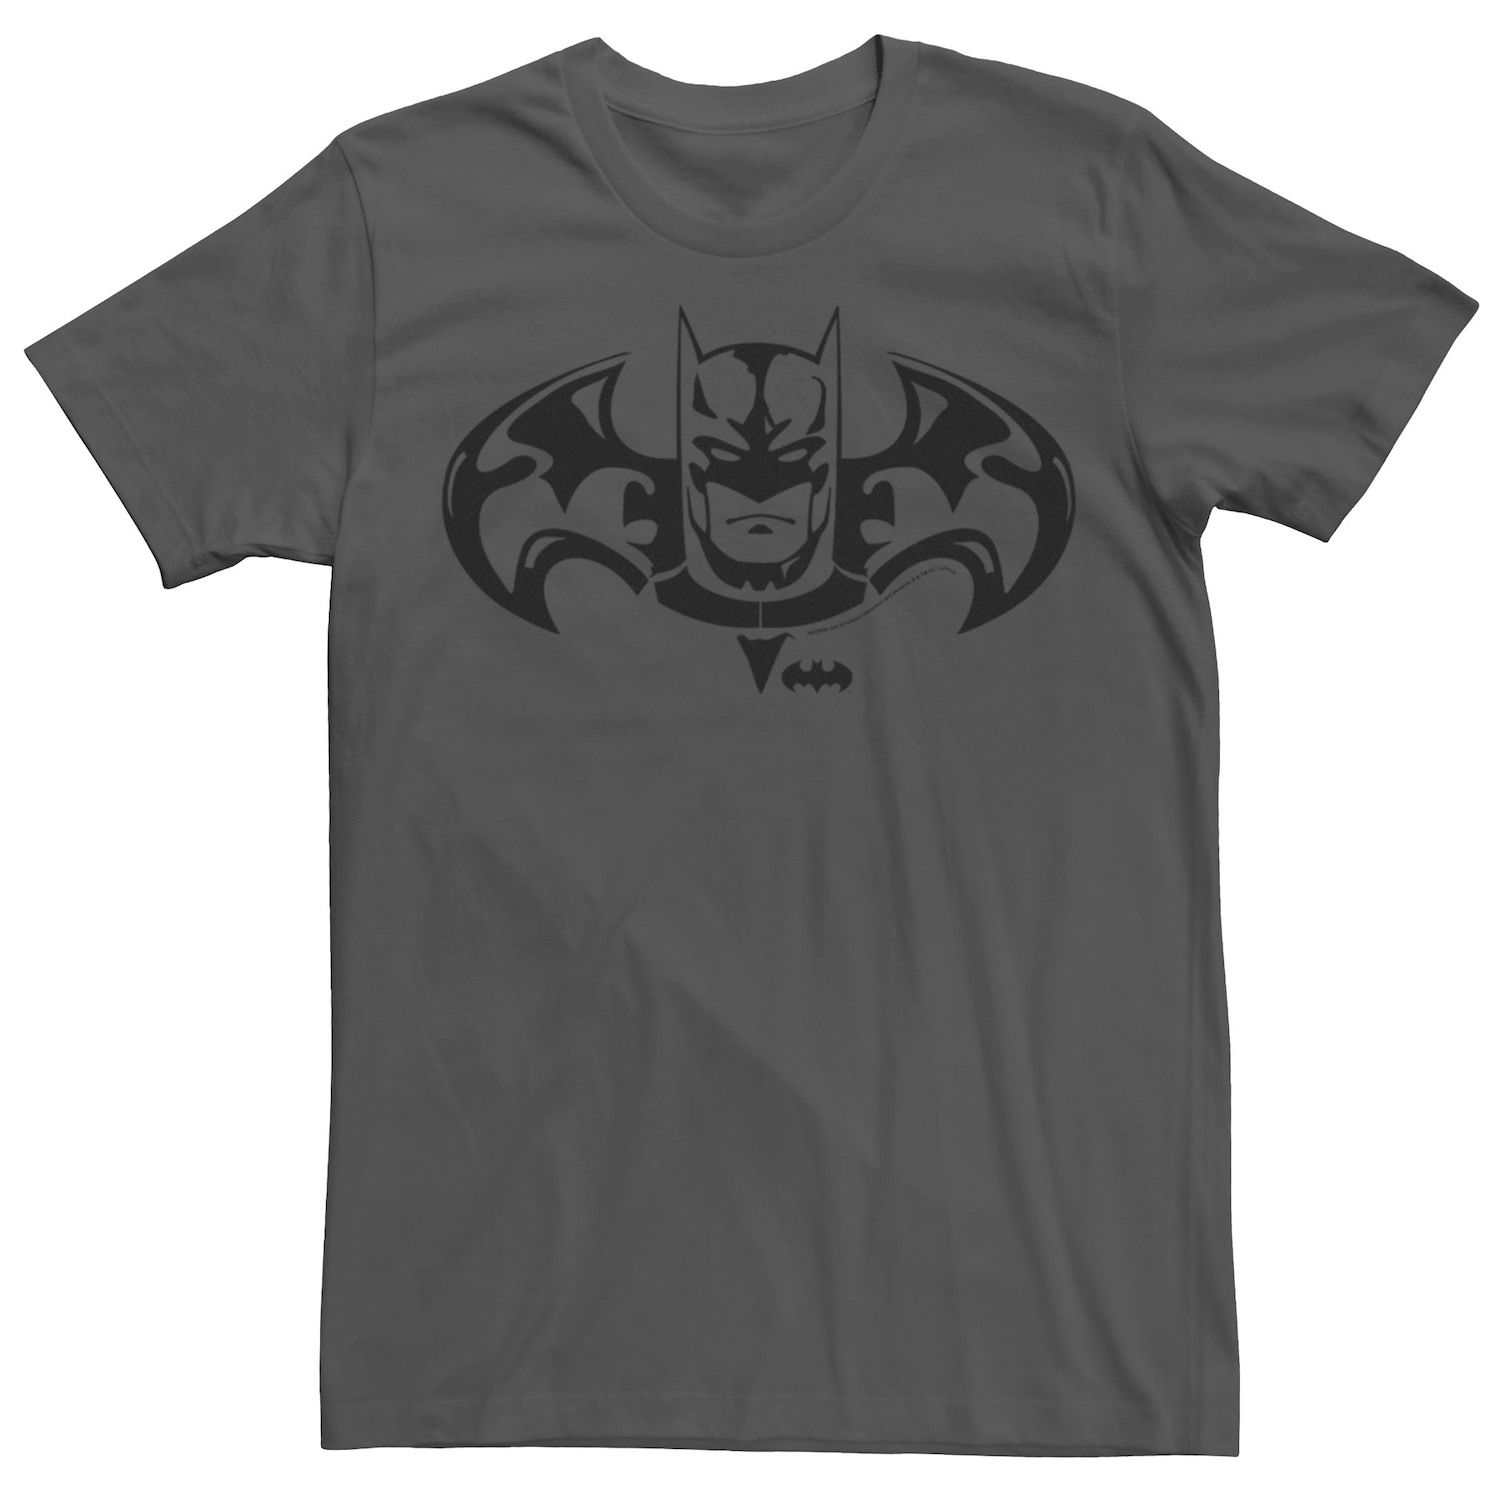 Мужская футболка с логотипом DC Fandome Batman Ink Licensed Character